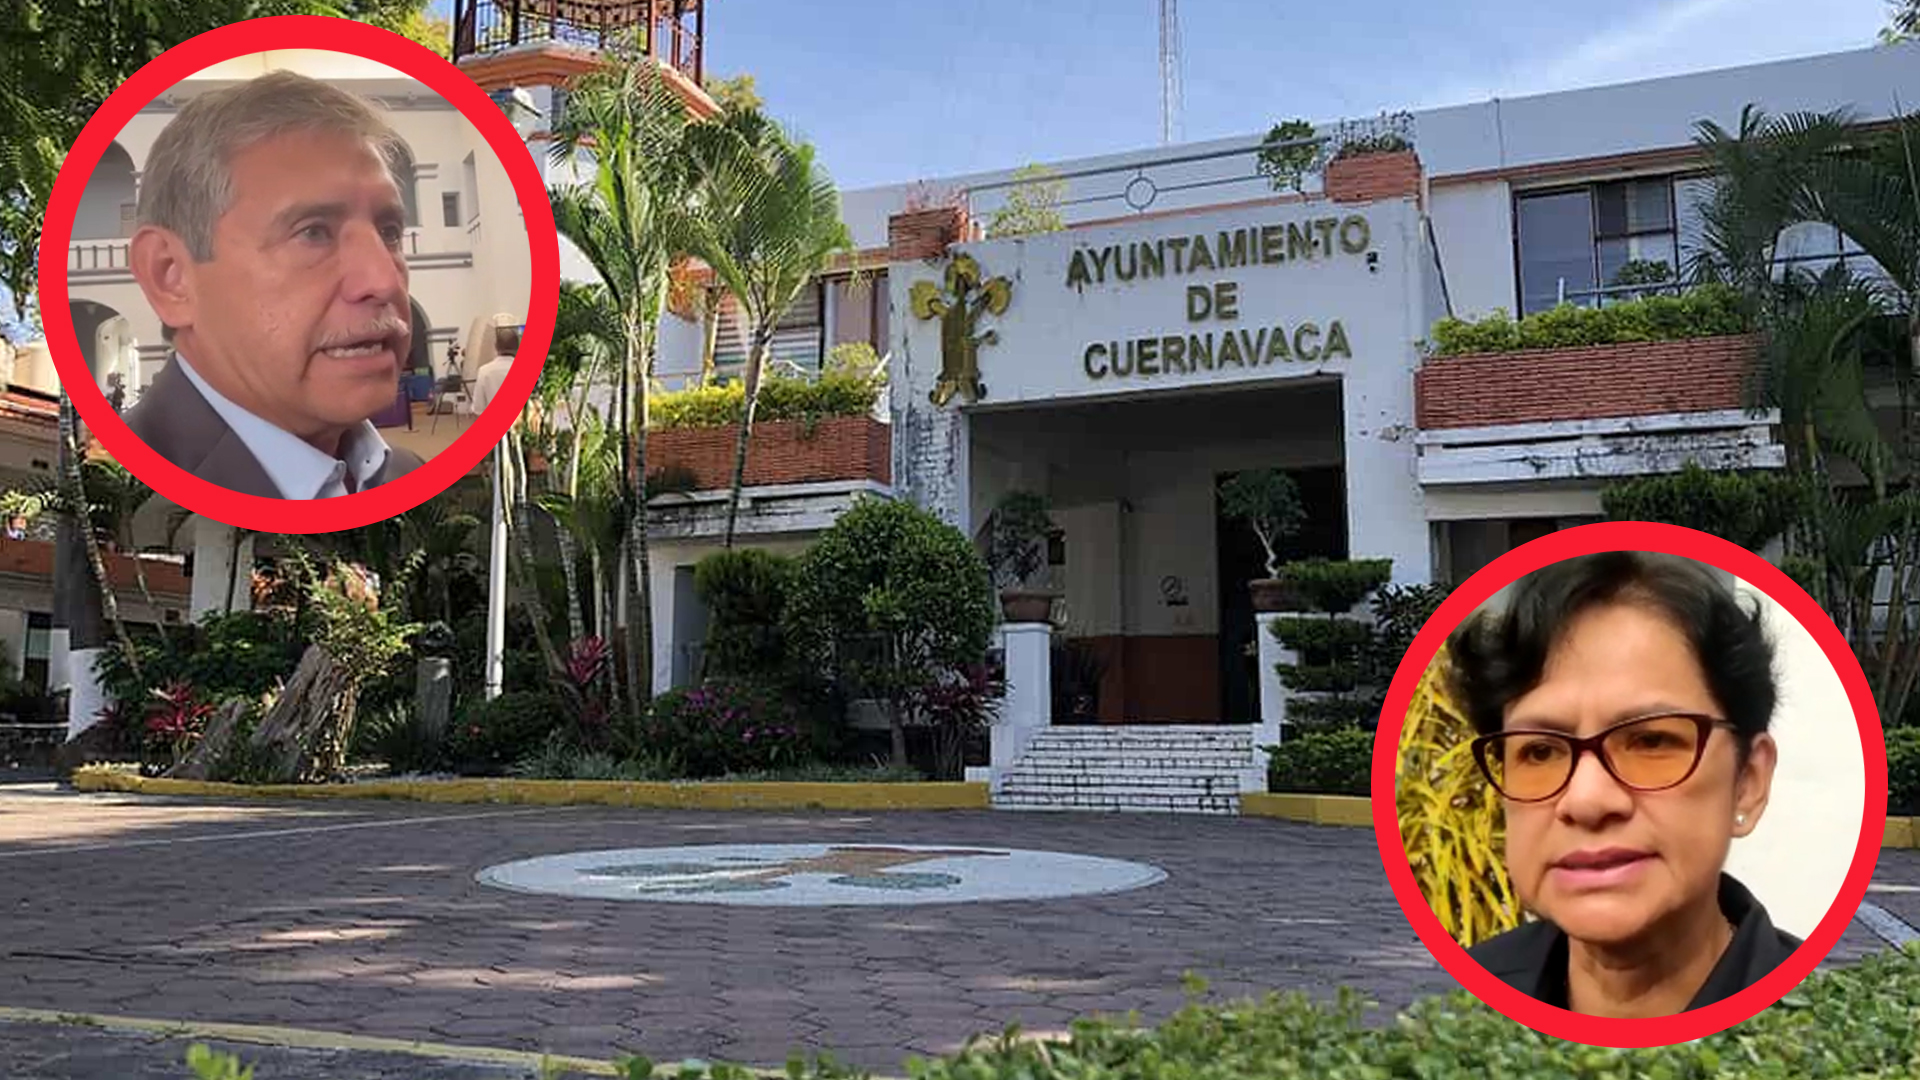 AYUNTAMIENTO DE CUERNAVACA DESCONOCÍA ACCIONES CRIMINALES DE SUS COLABORADORES